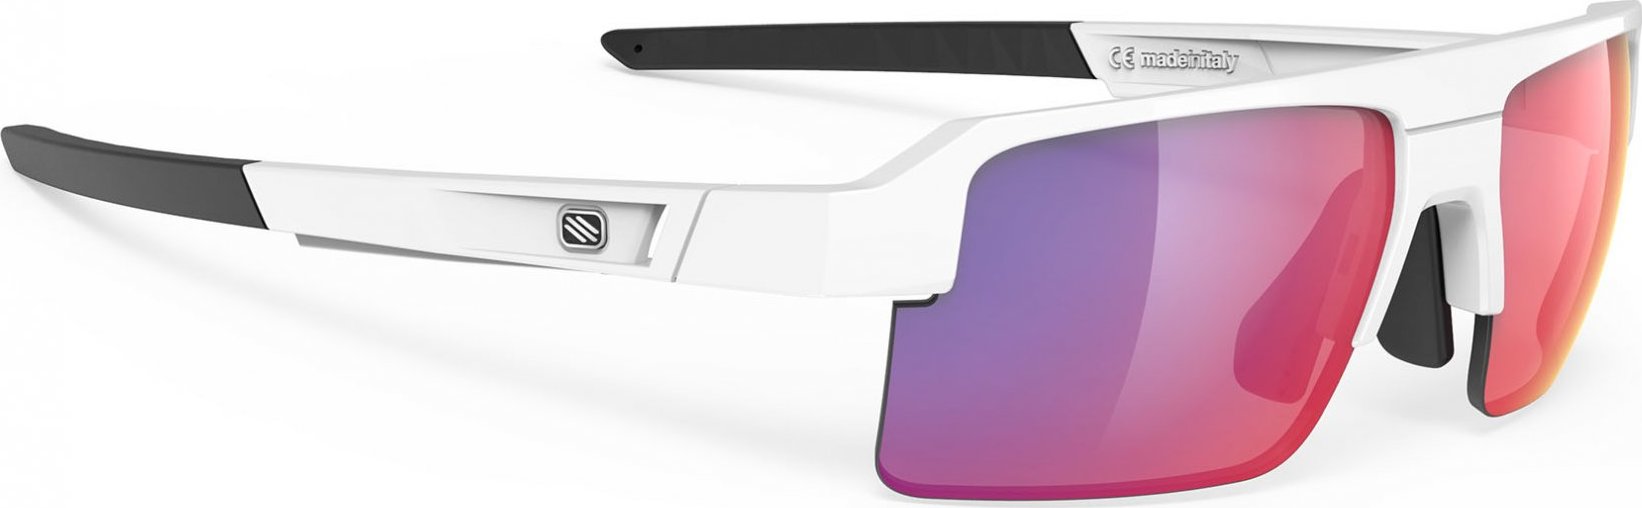 Sportovní sluneční brýle RUDY PROJECT Sirius bílé